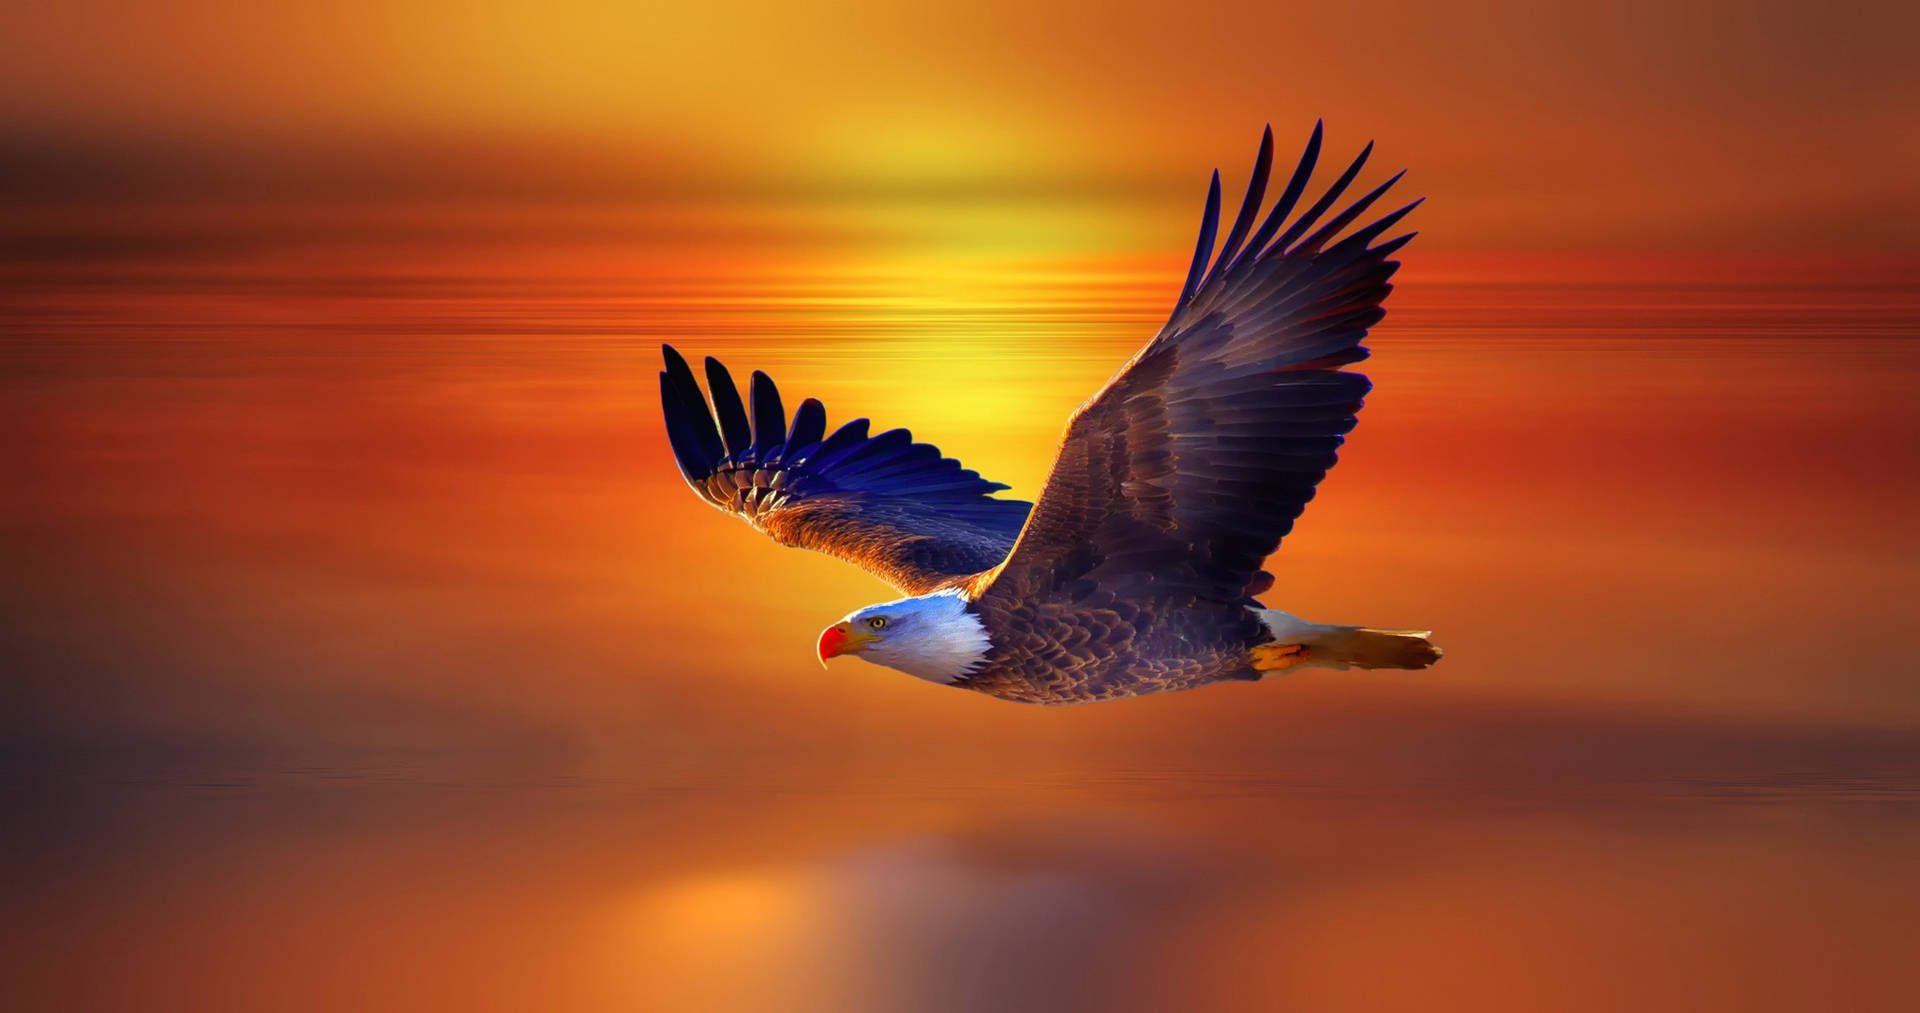 Adlerfliegt Über Die Sonnenuntergangsmeere Wallpaper